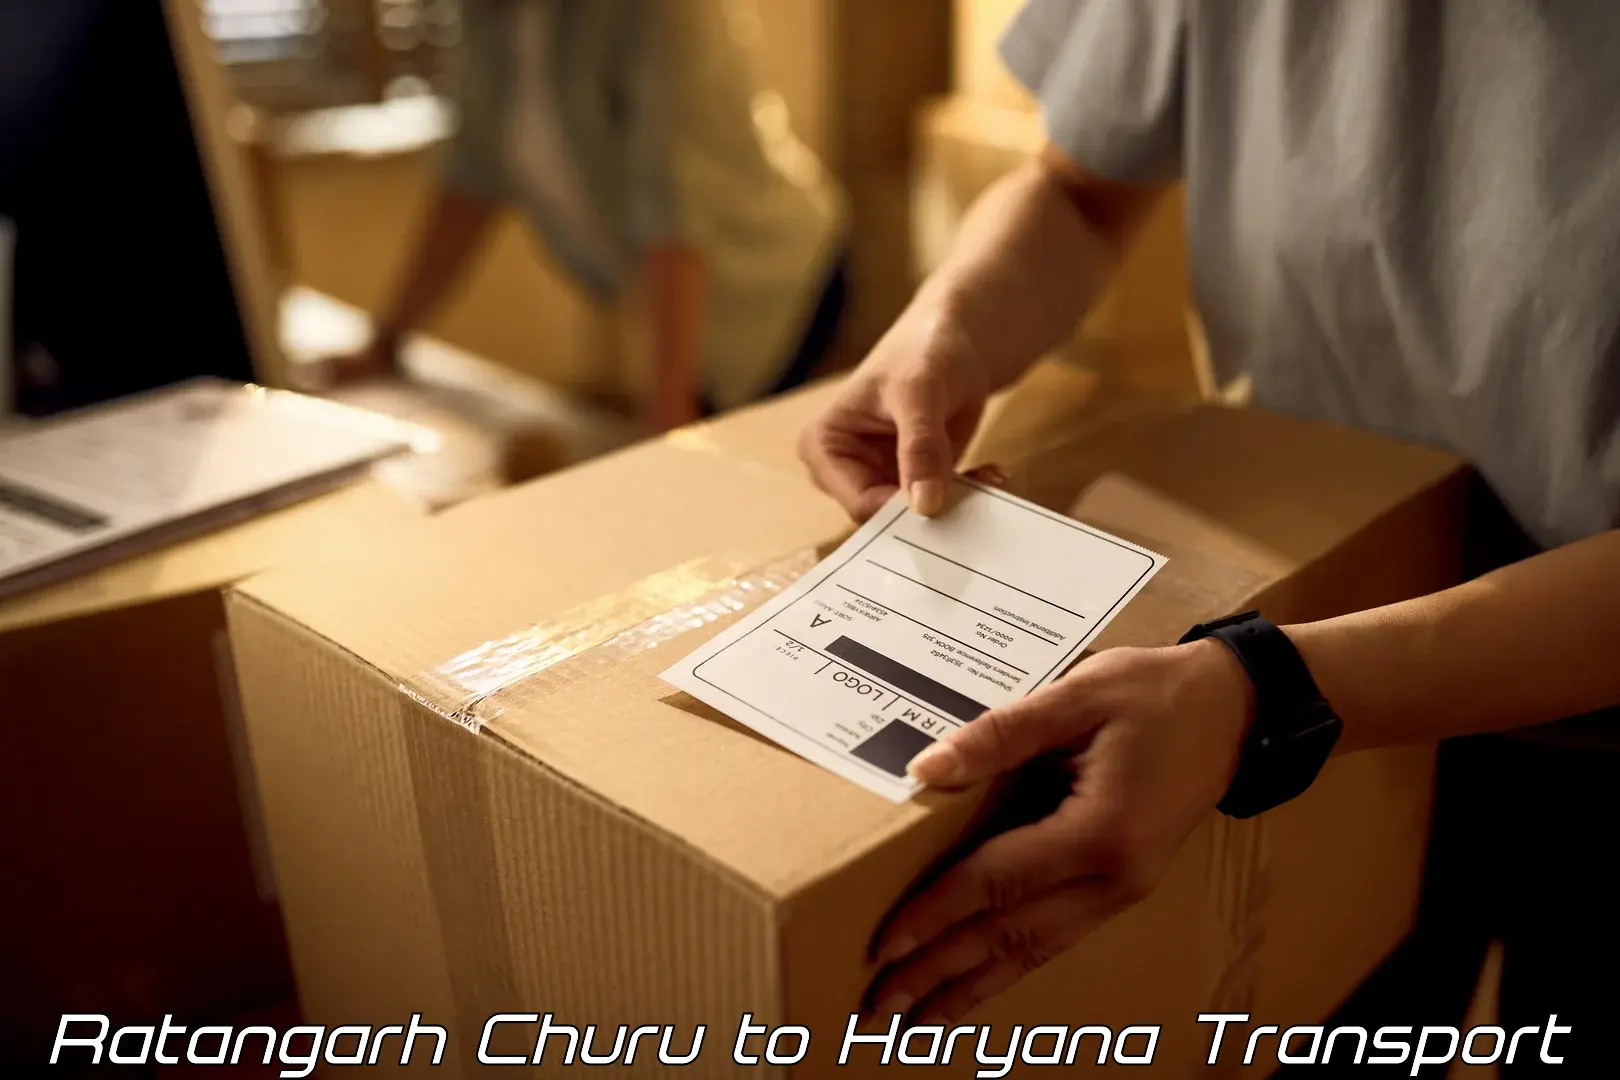 Transport in sharing Ratangarh Churu to Haryana